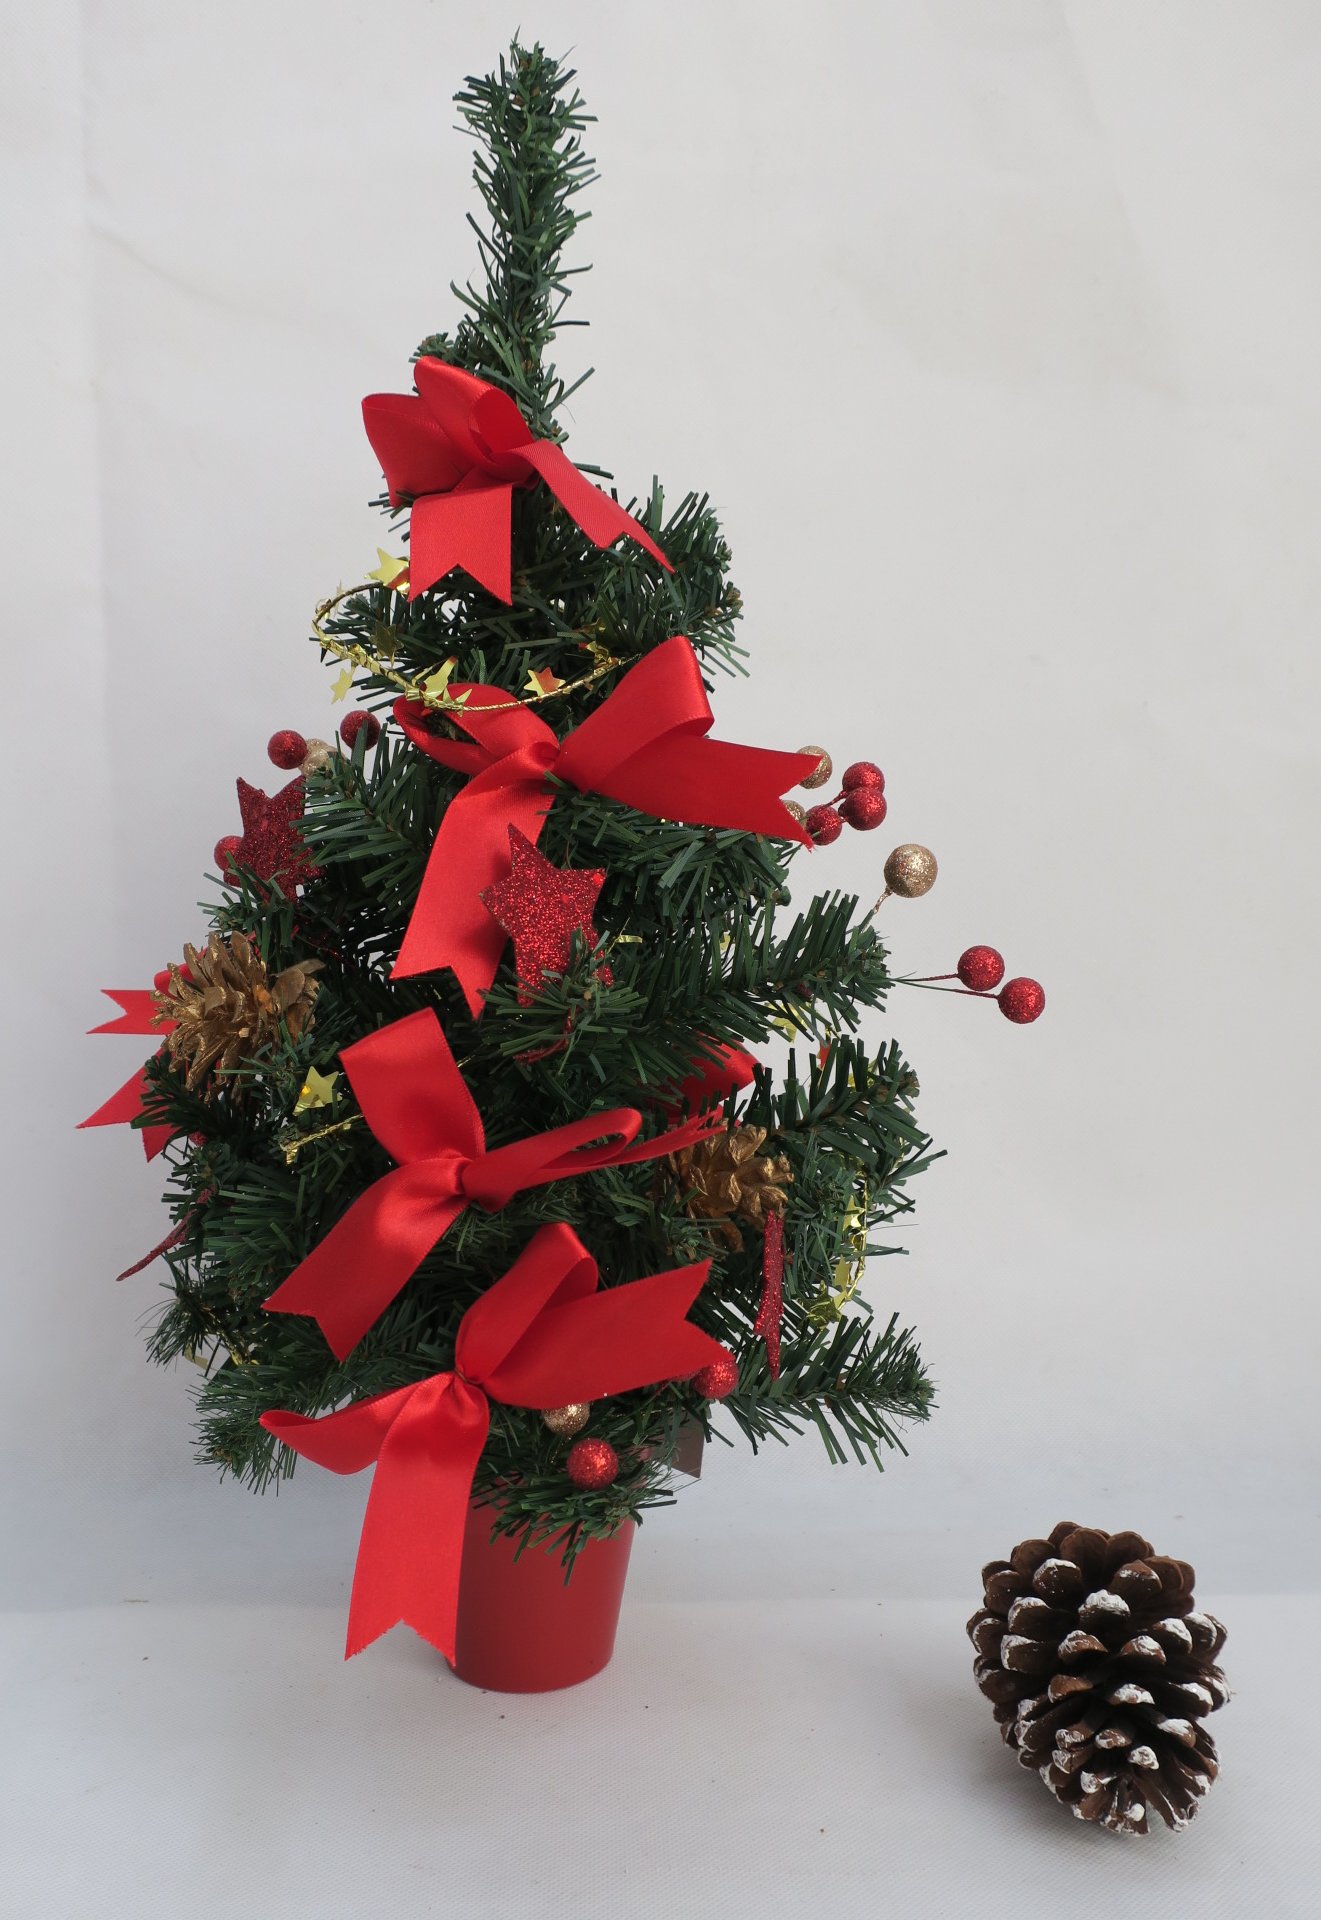 圣诞橱窗摆件 圣诞节装饰用品 30CM高圣诞树装饰摆件 单个价格